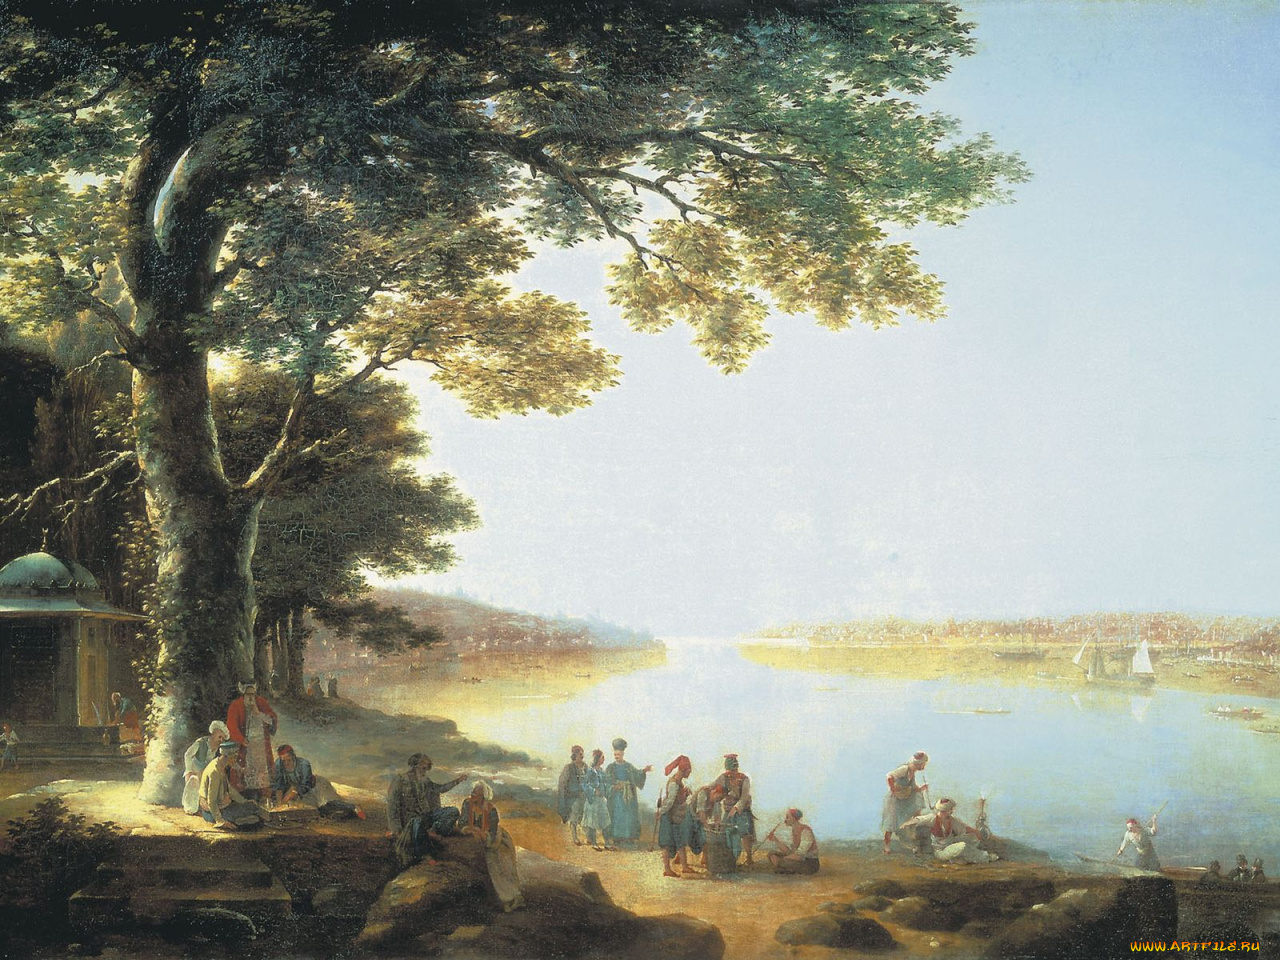 Максим Никифорович воробьёв. Картина «итальянский пейзаж», 1847